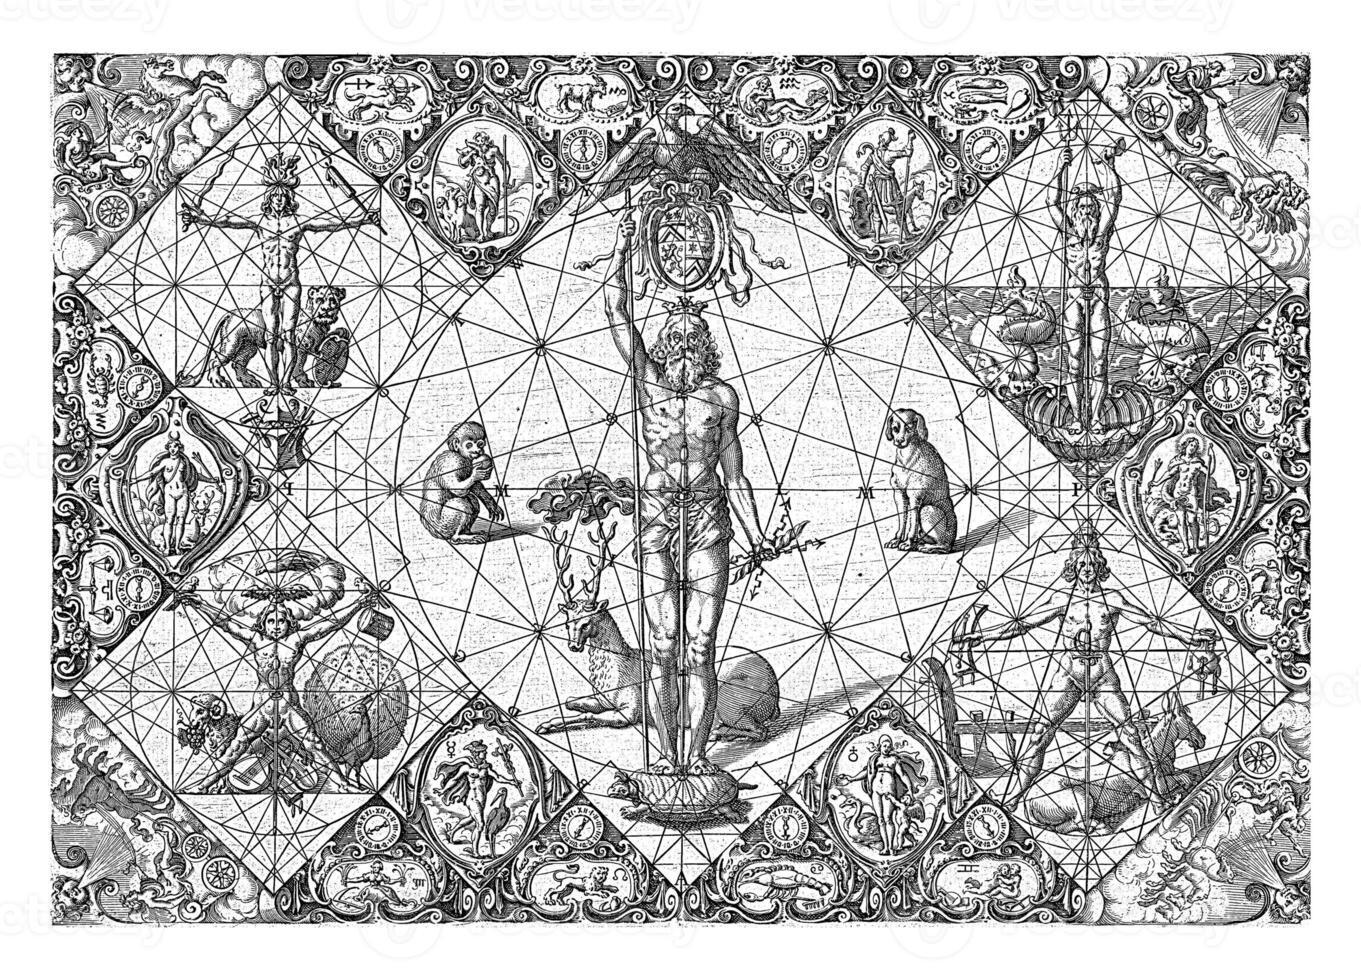 incoronato Giove in mezzo il elementi e pianeti, michiel Le biondo, 1597 - 1656 foto